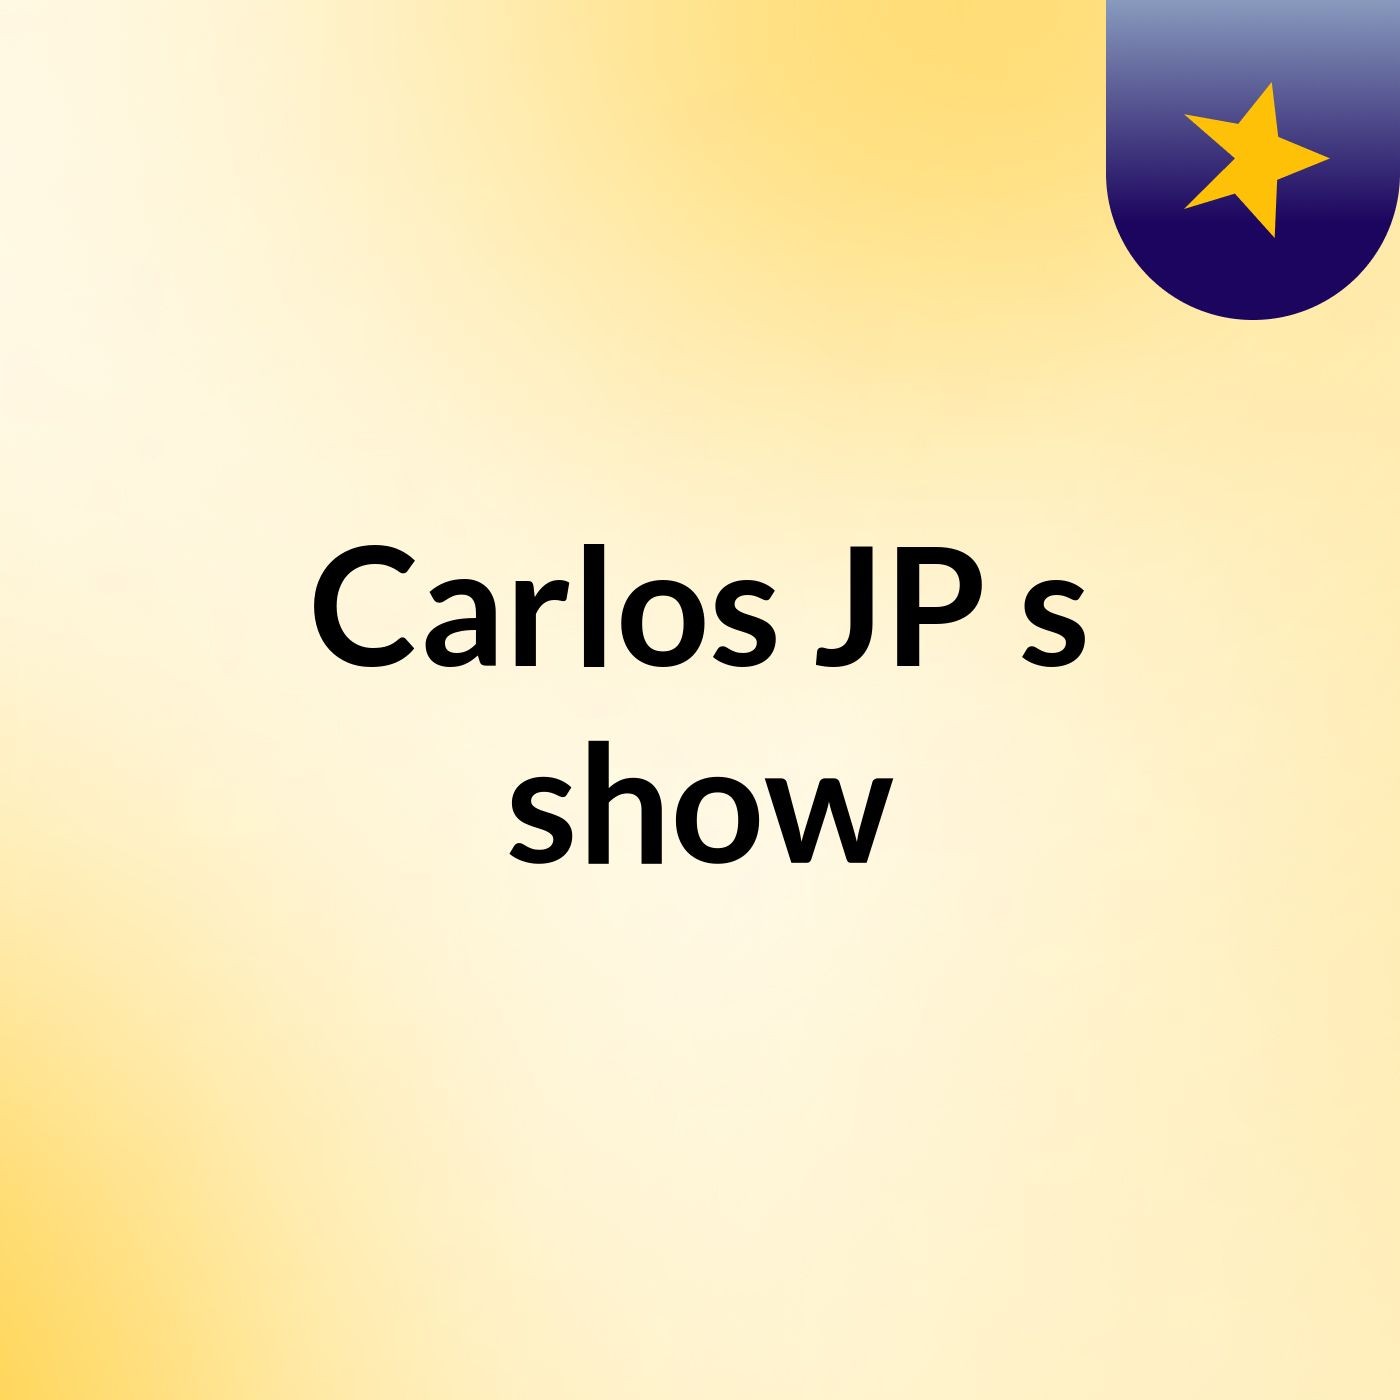 Carlos JP's show